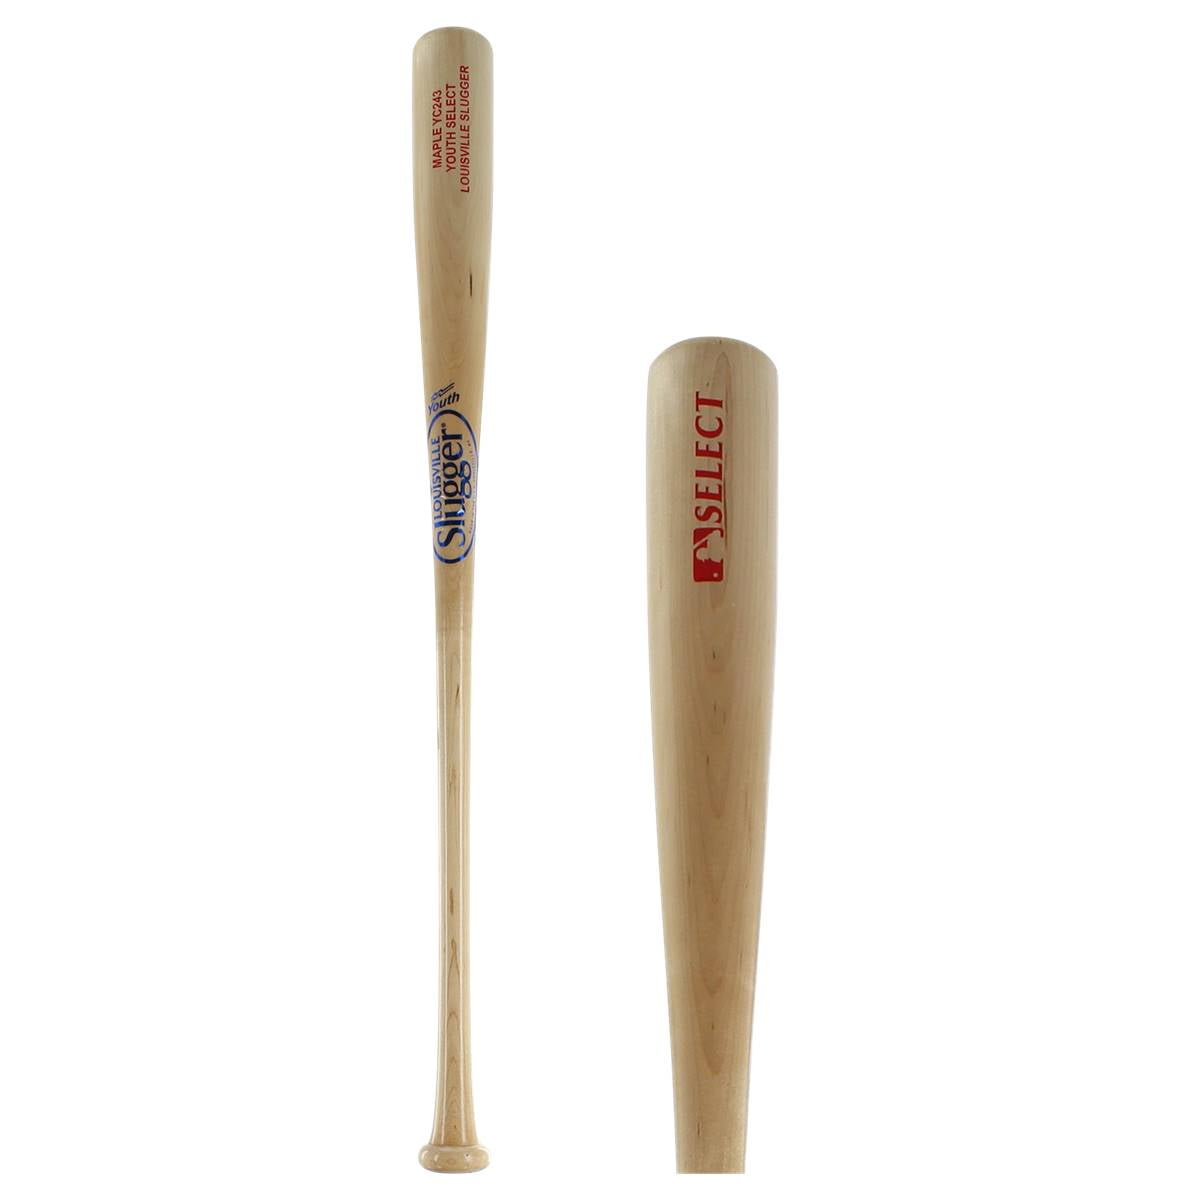 Louisville Slugger Select Maple Wood Youth Baseball Bat: WTLWYM243A1 29 inch - 0